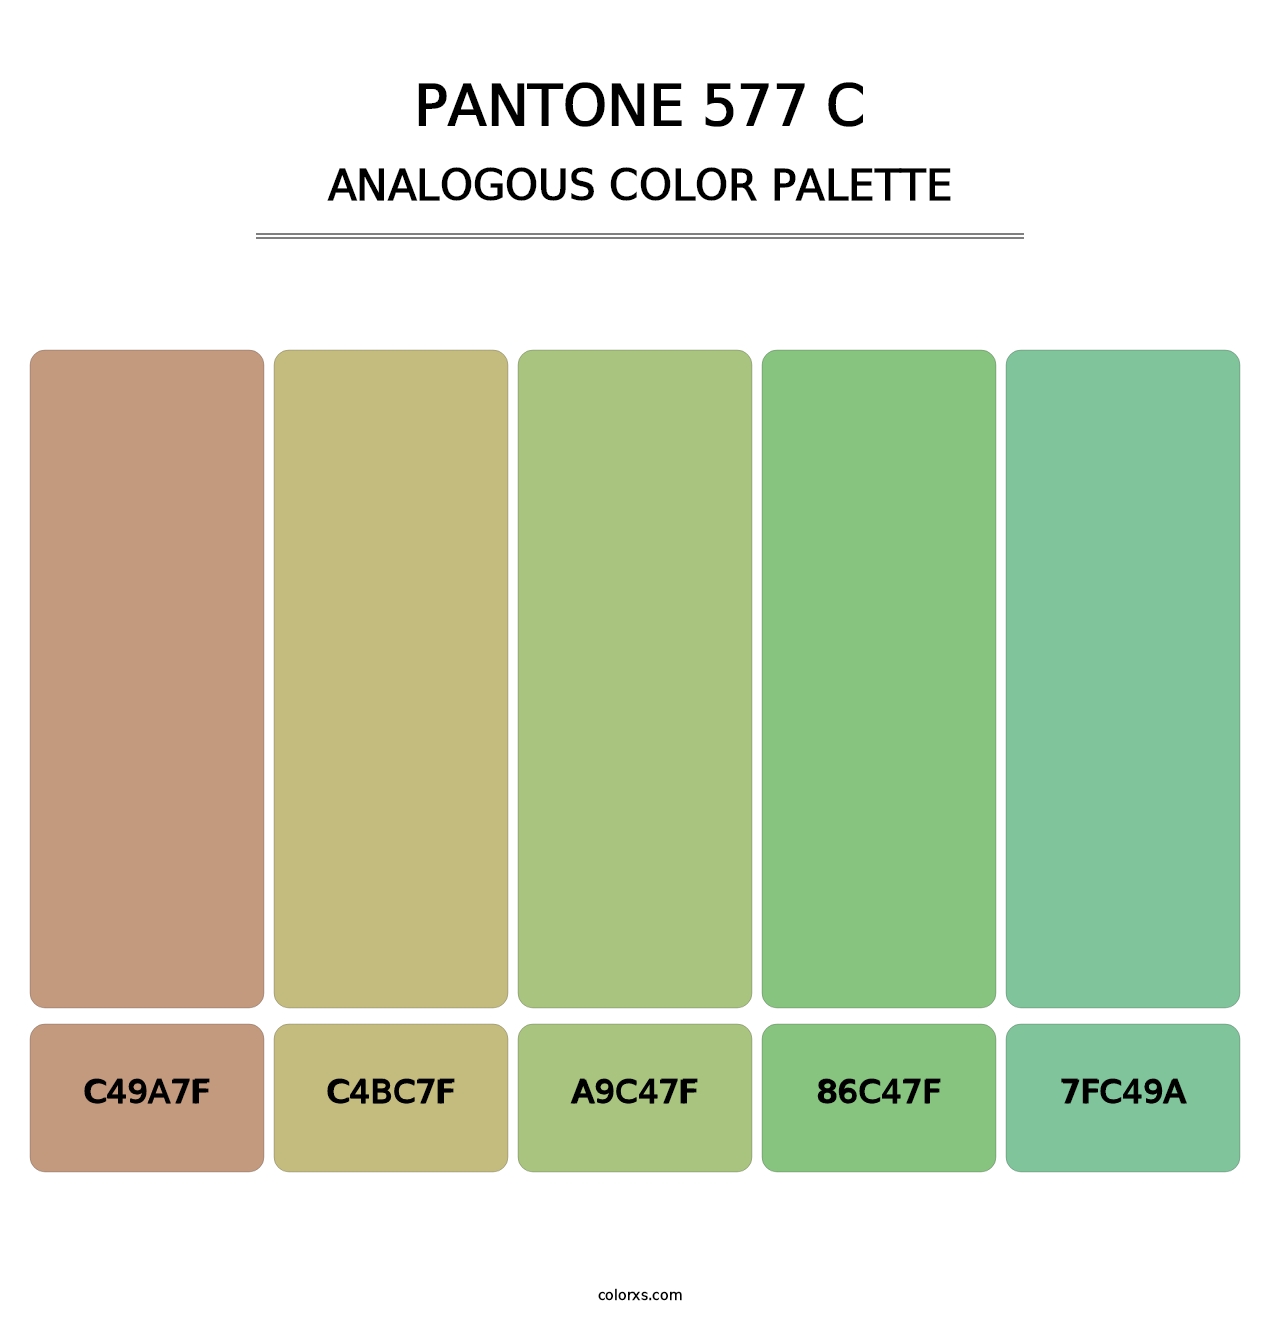 PANTONE 577 C - Analogous Color Palette